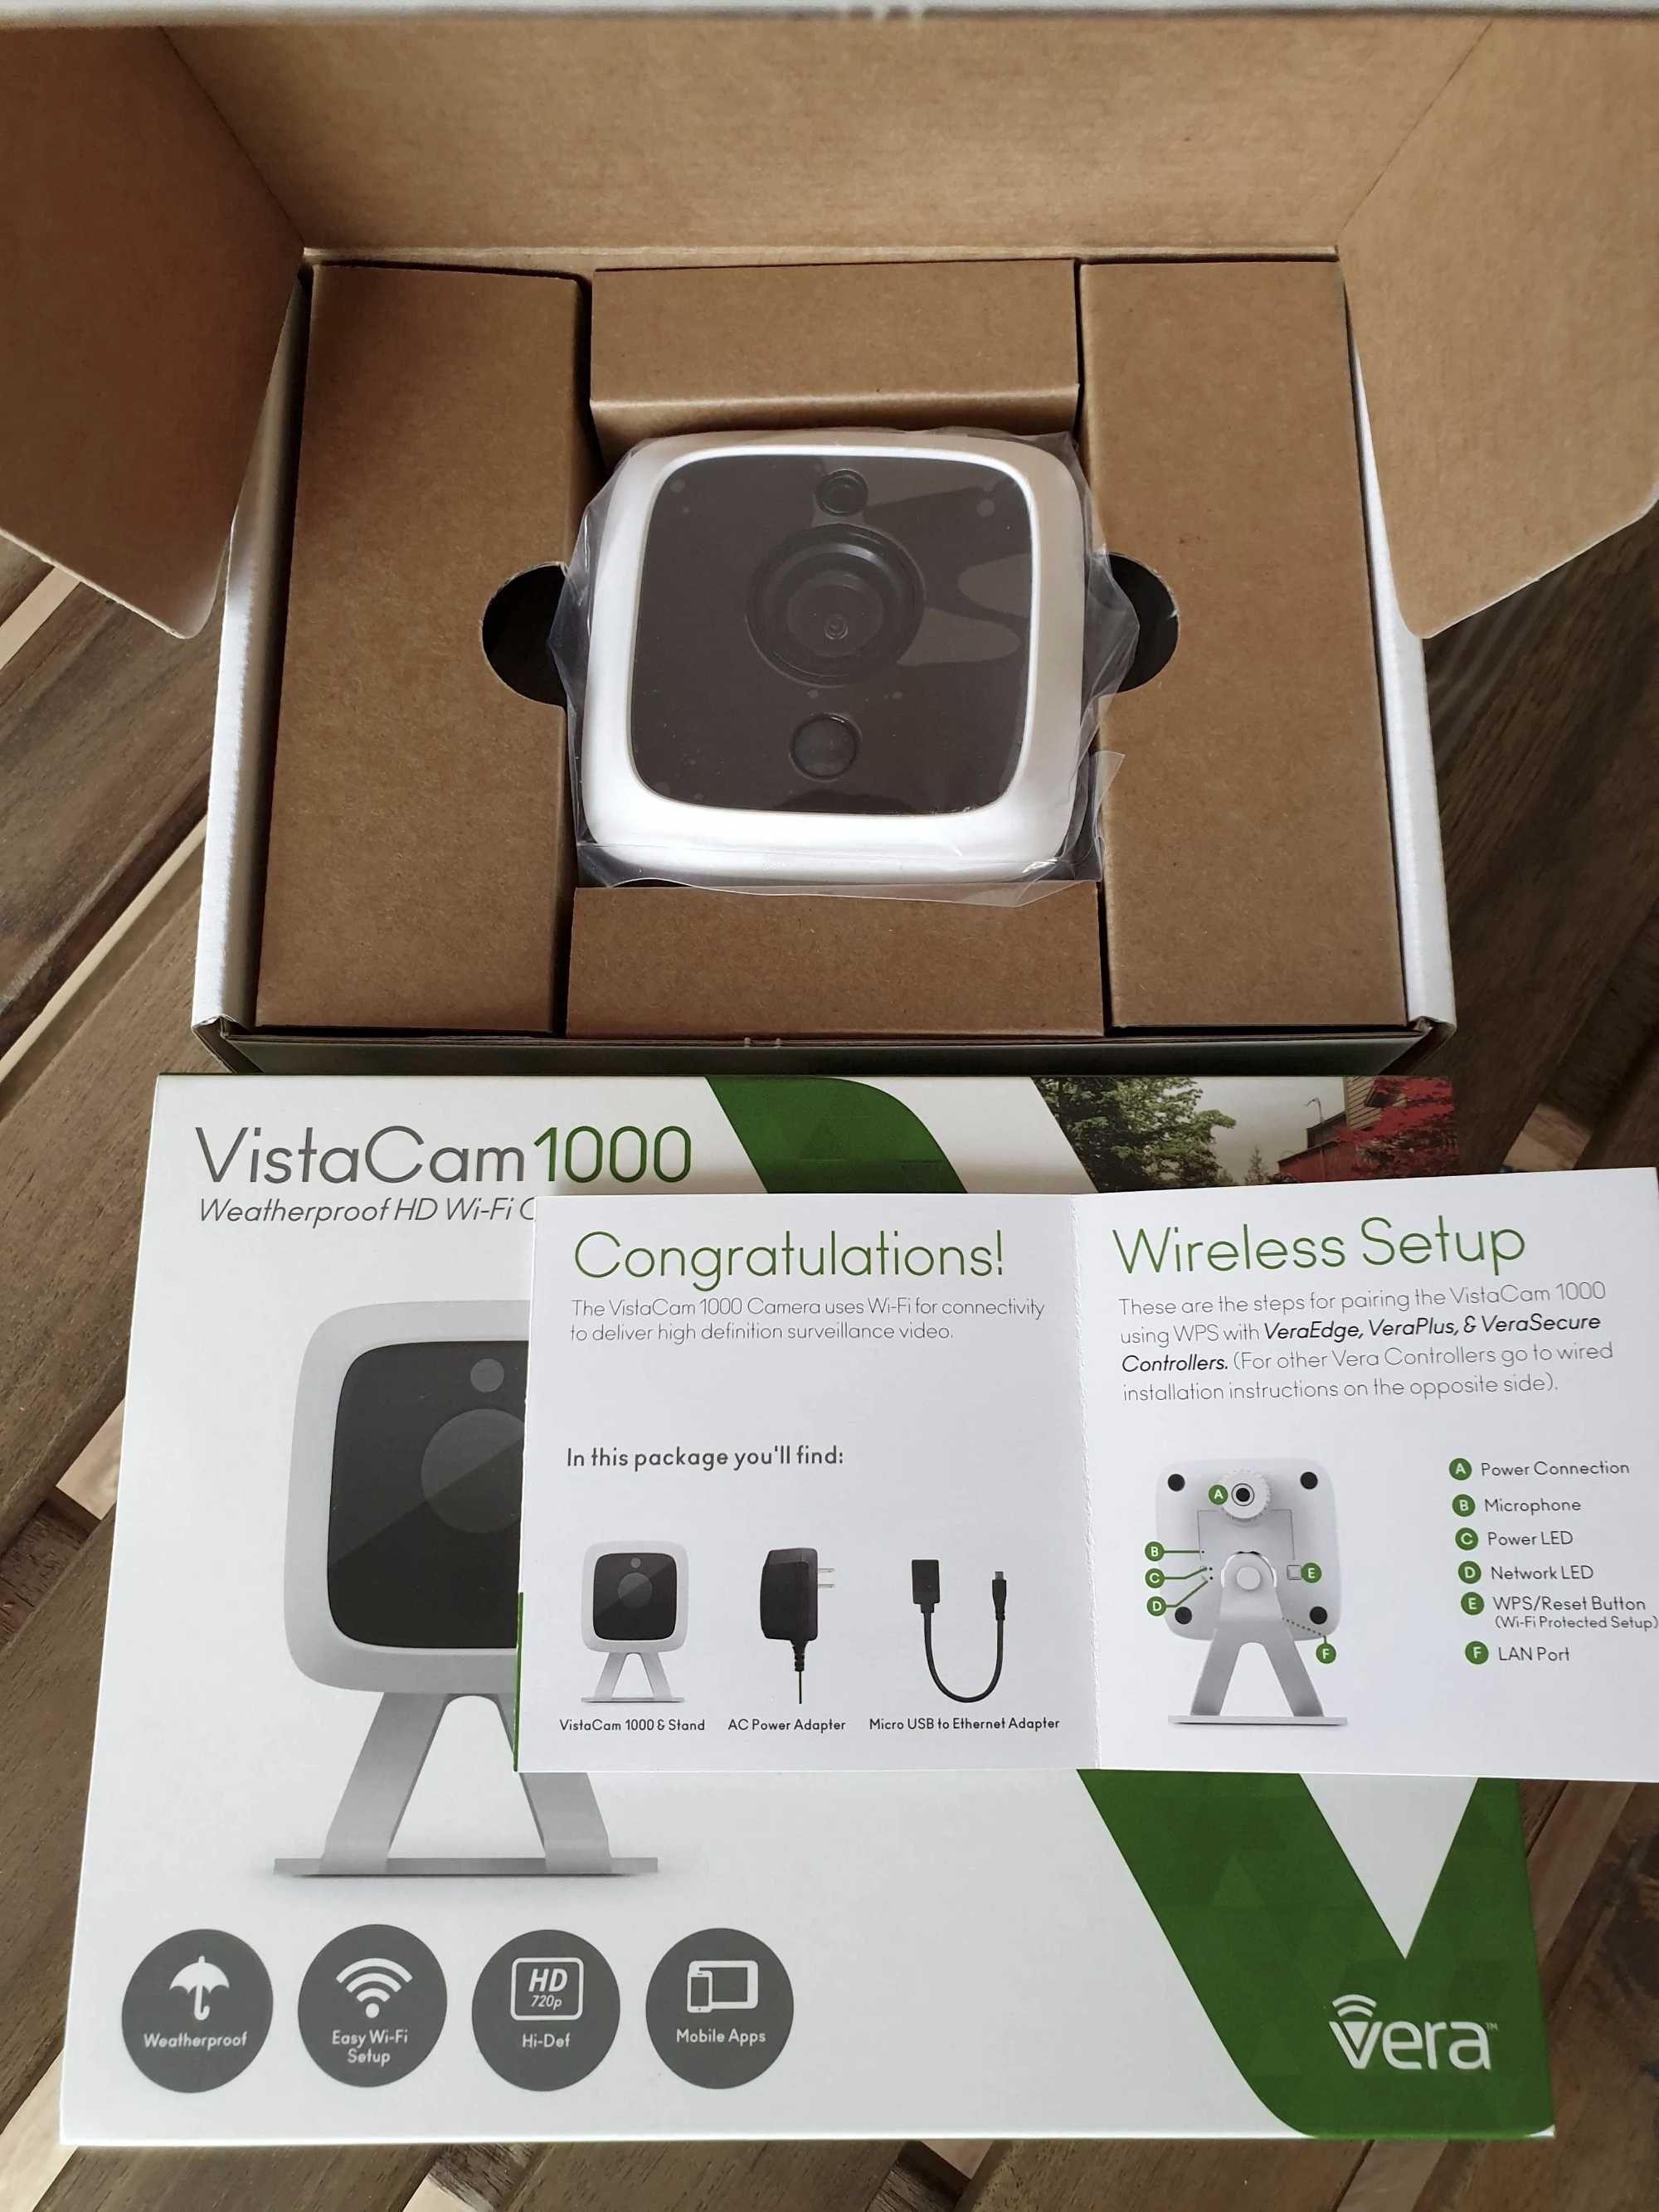 Vistacam 1000 wi-fi 720p Smart Home